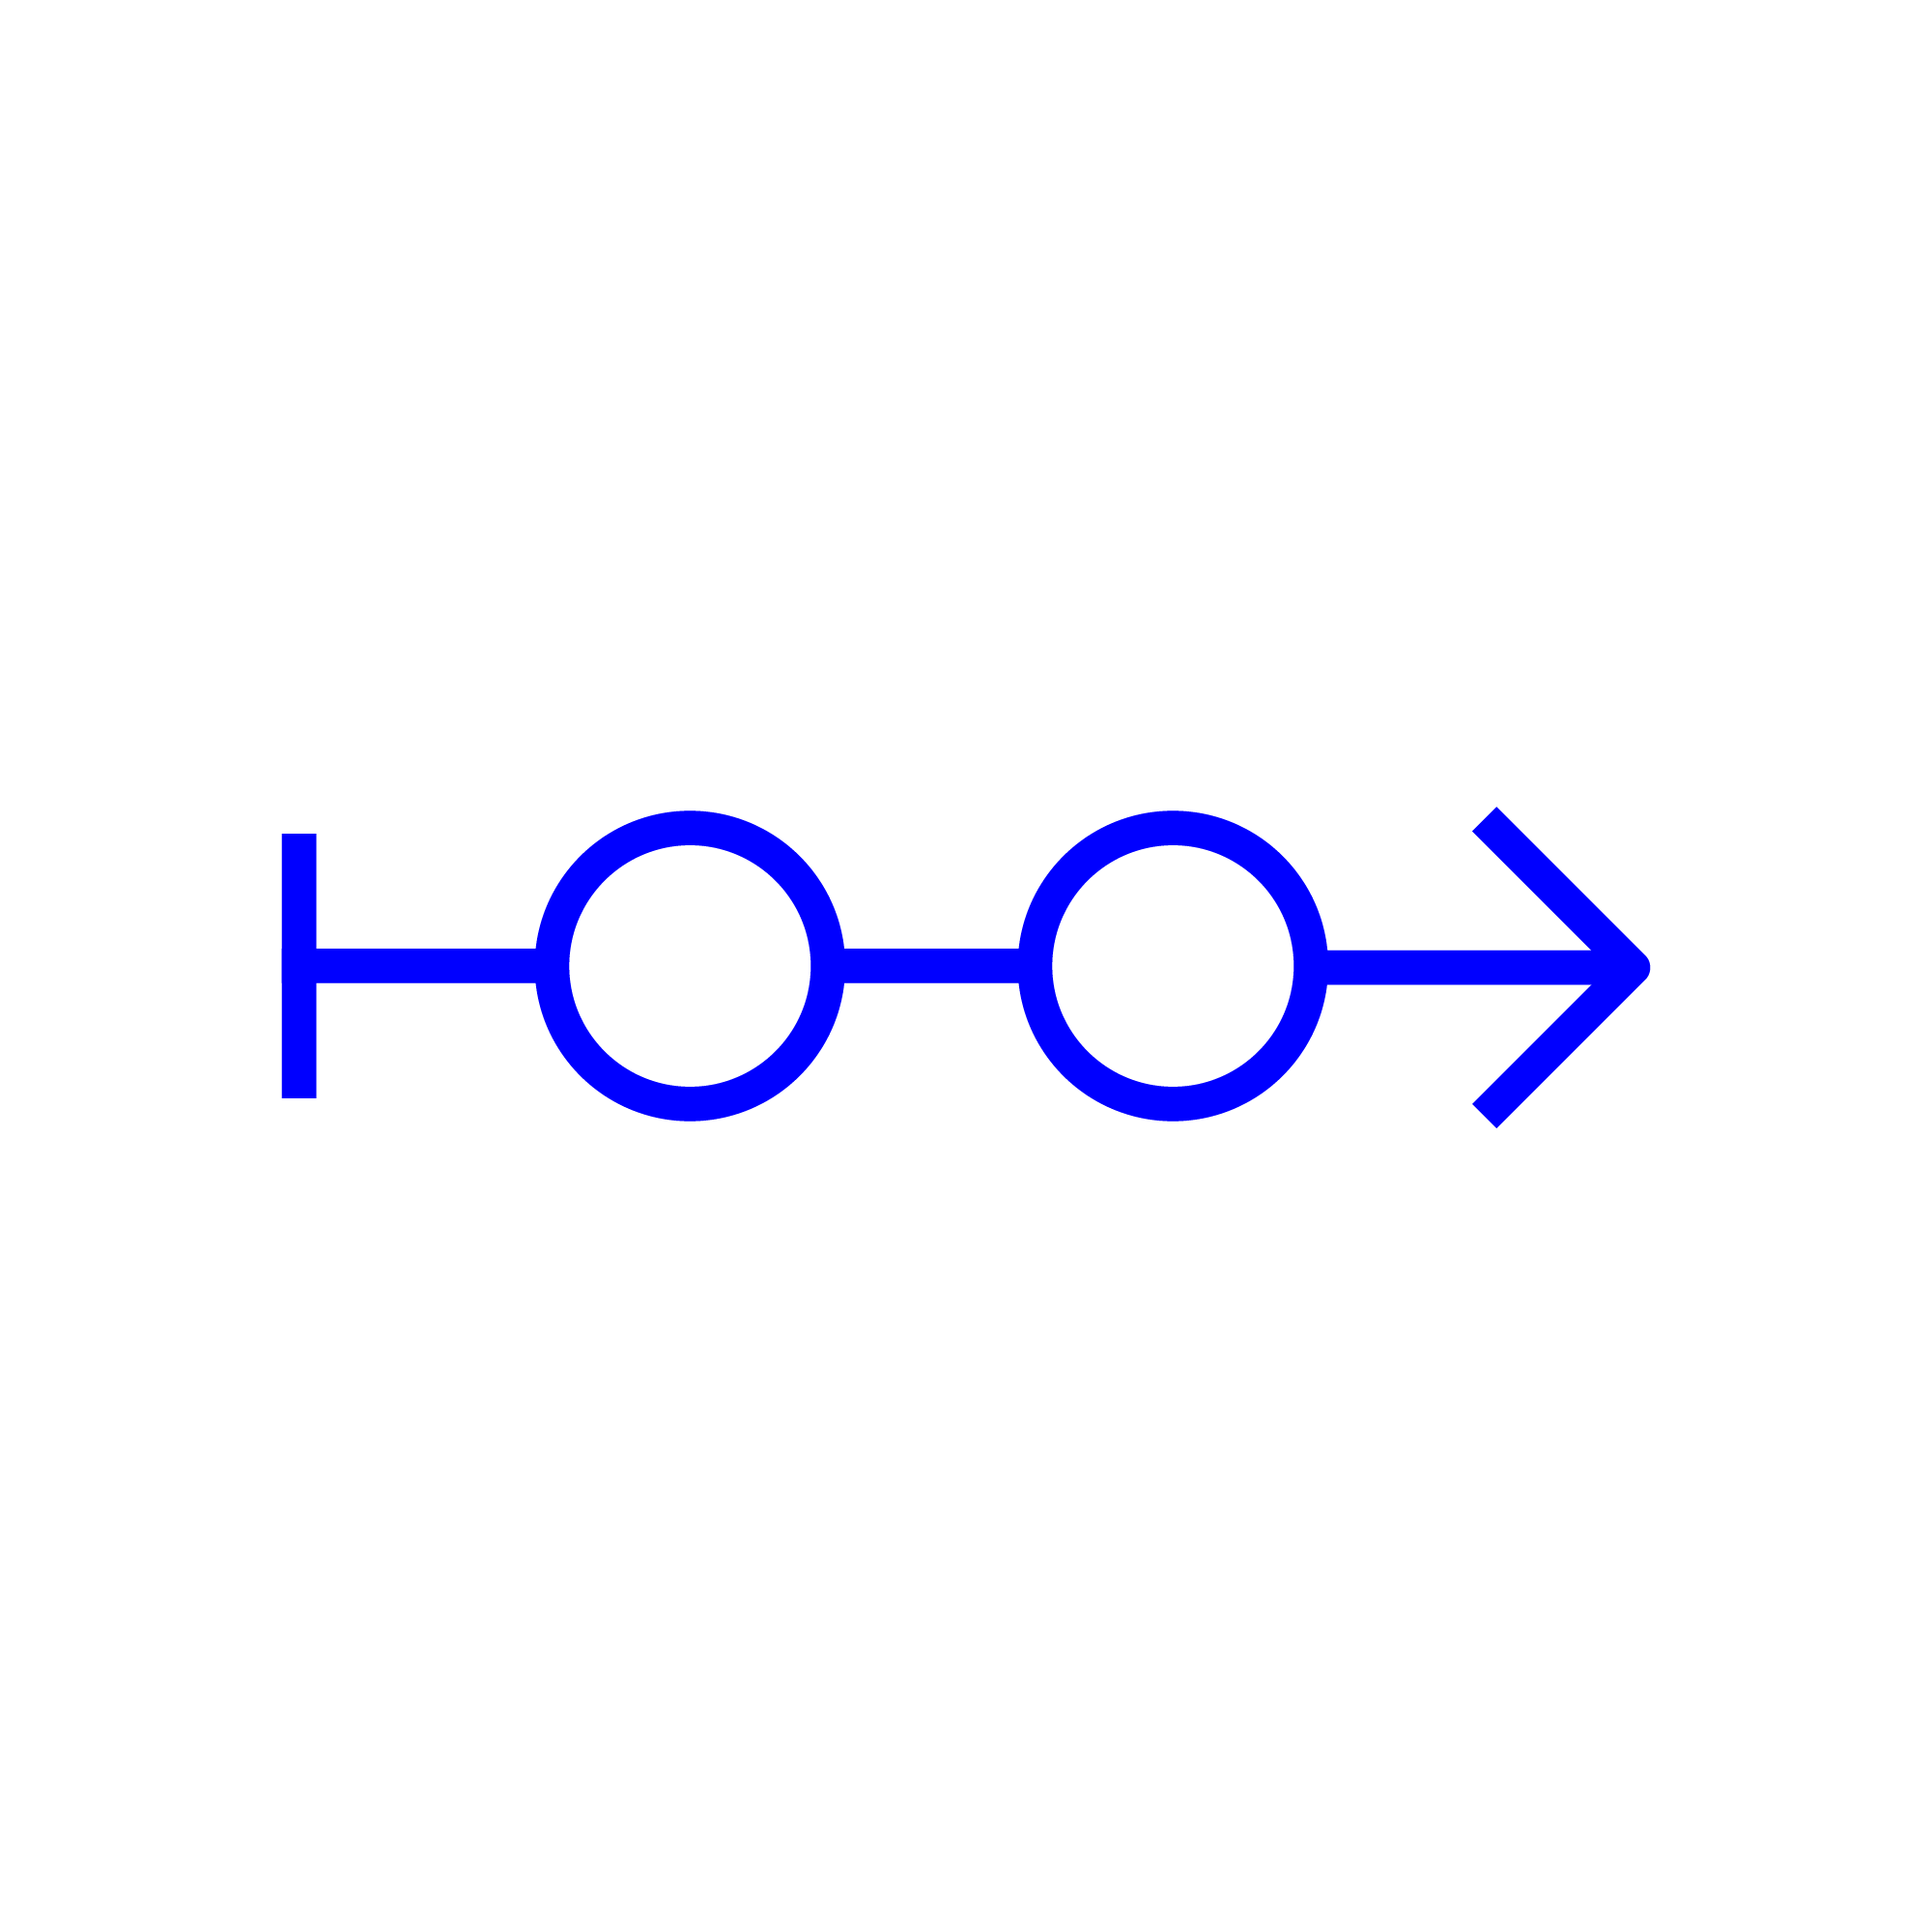 Abstrakte grafische Darstellung eines Pfeiles mit zwei Kreisen als Stationen als Symbol für eine Begleitung während eines Prozesses